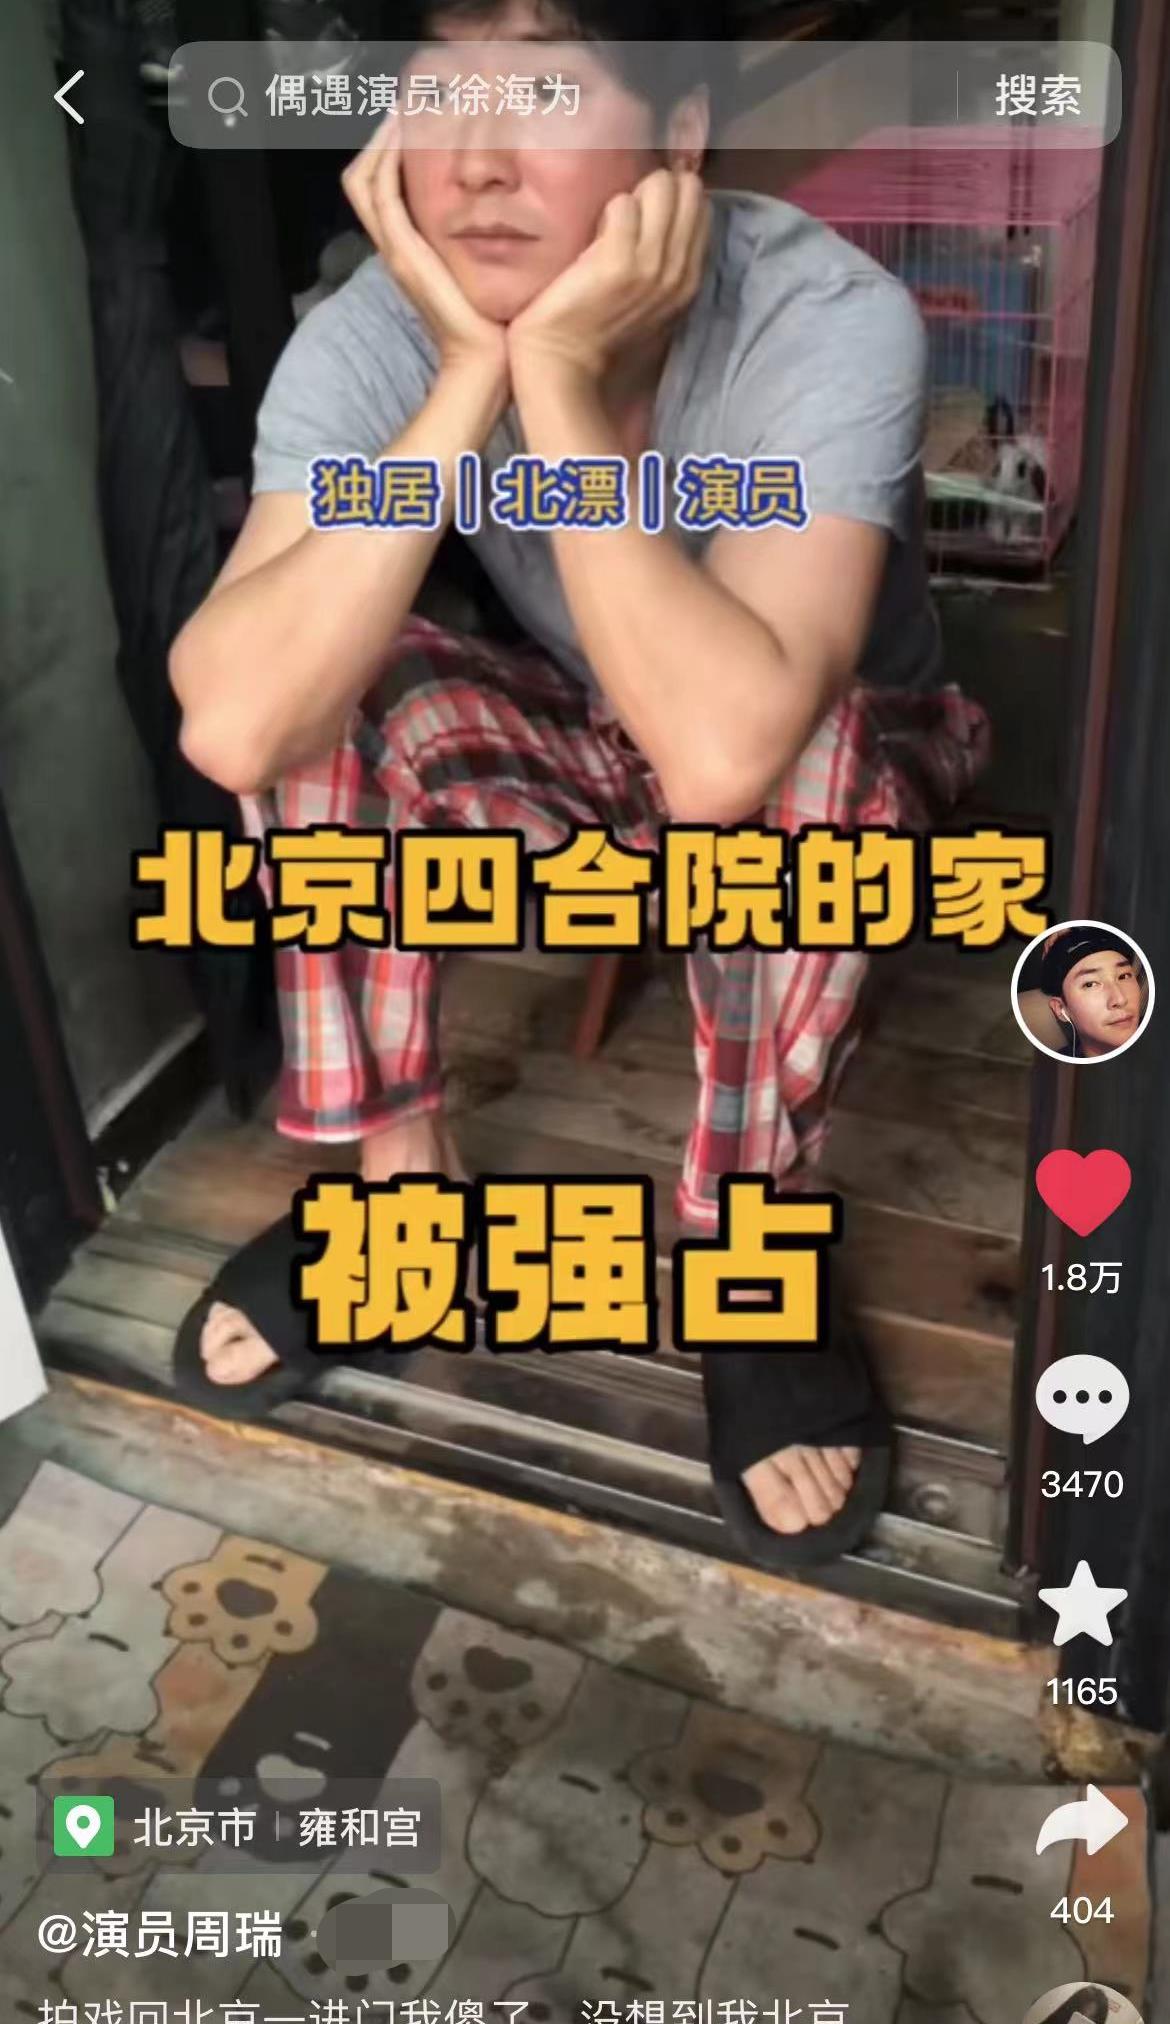 37岁男星北京四合院家遭邻居强占，家中堆满他物，愤怒驱赶撕破脸 隐情还有哪些？